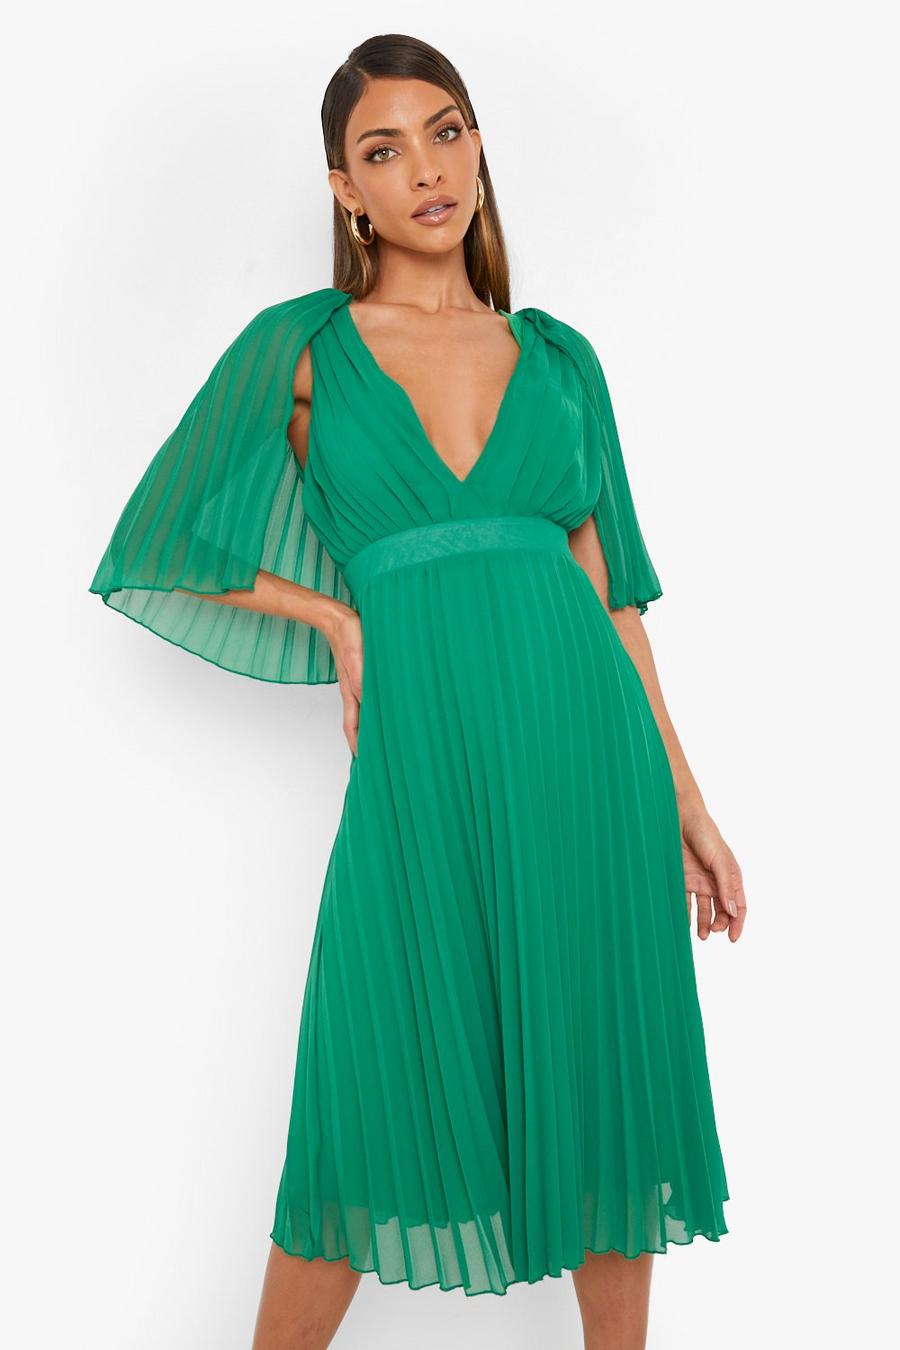 ירוק gerde שמלת שושבינה באורך מידי עם קפלים ושכמייה